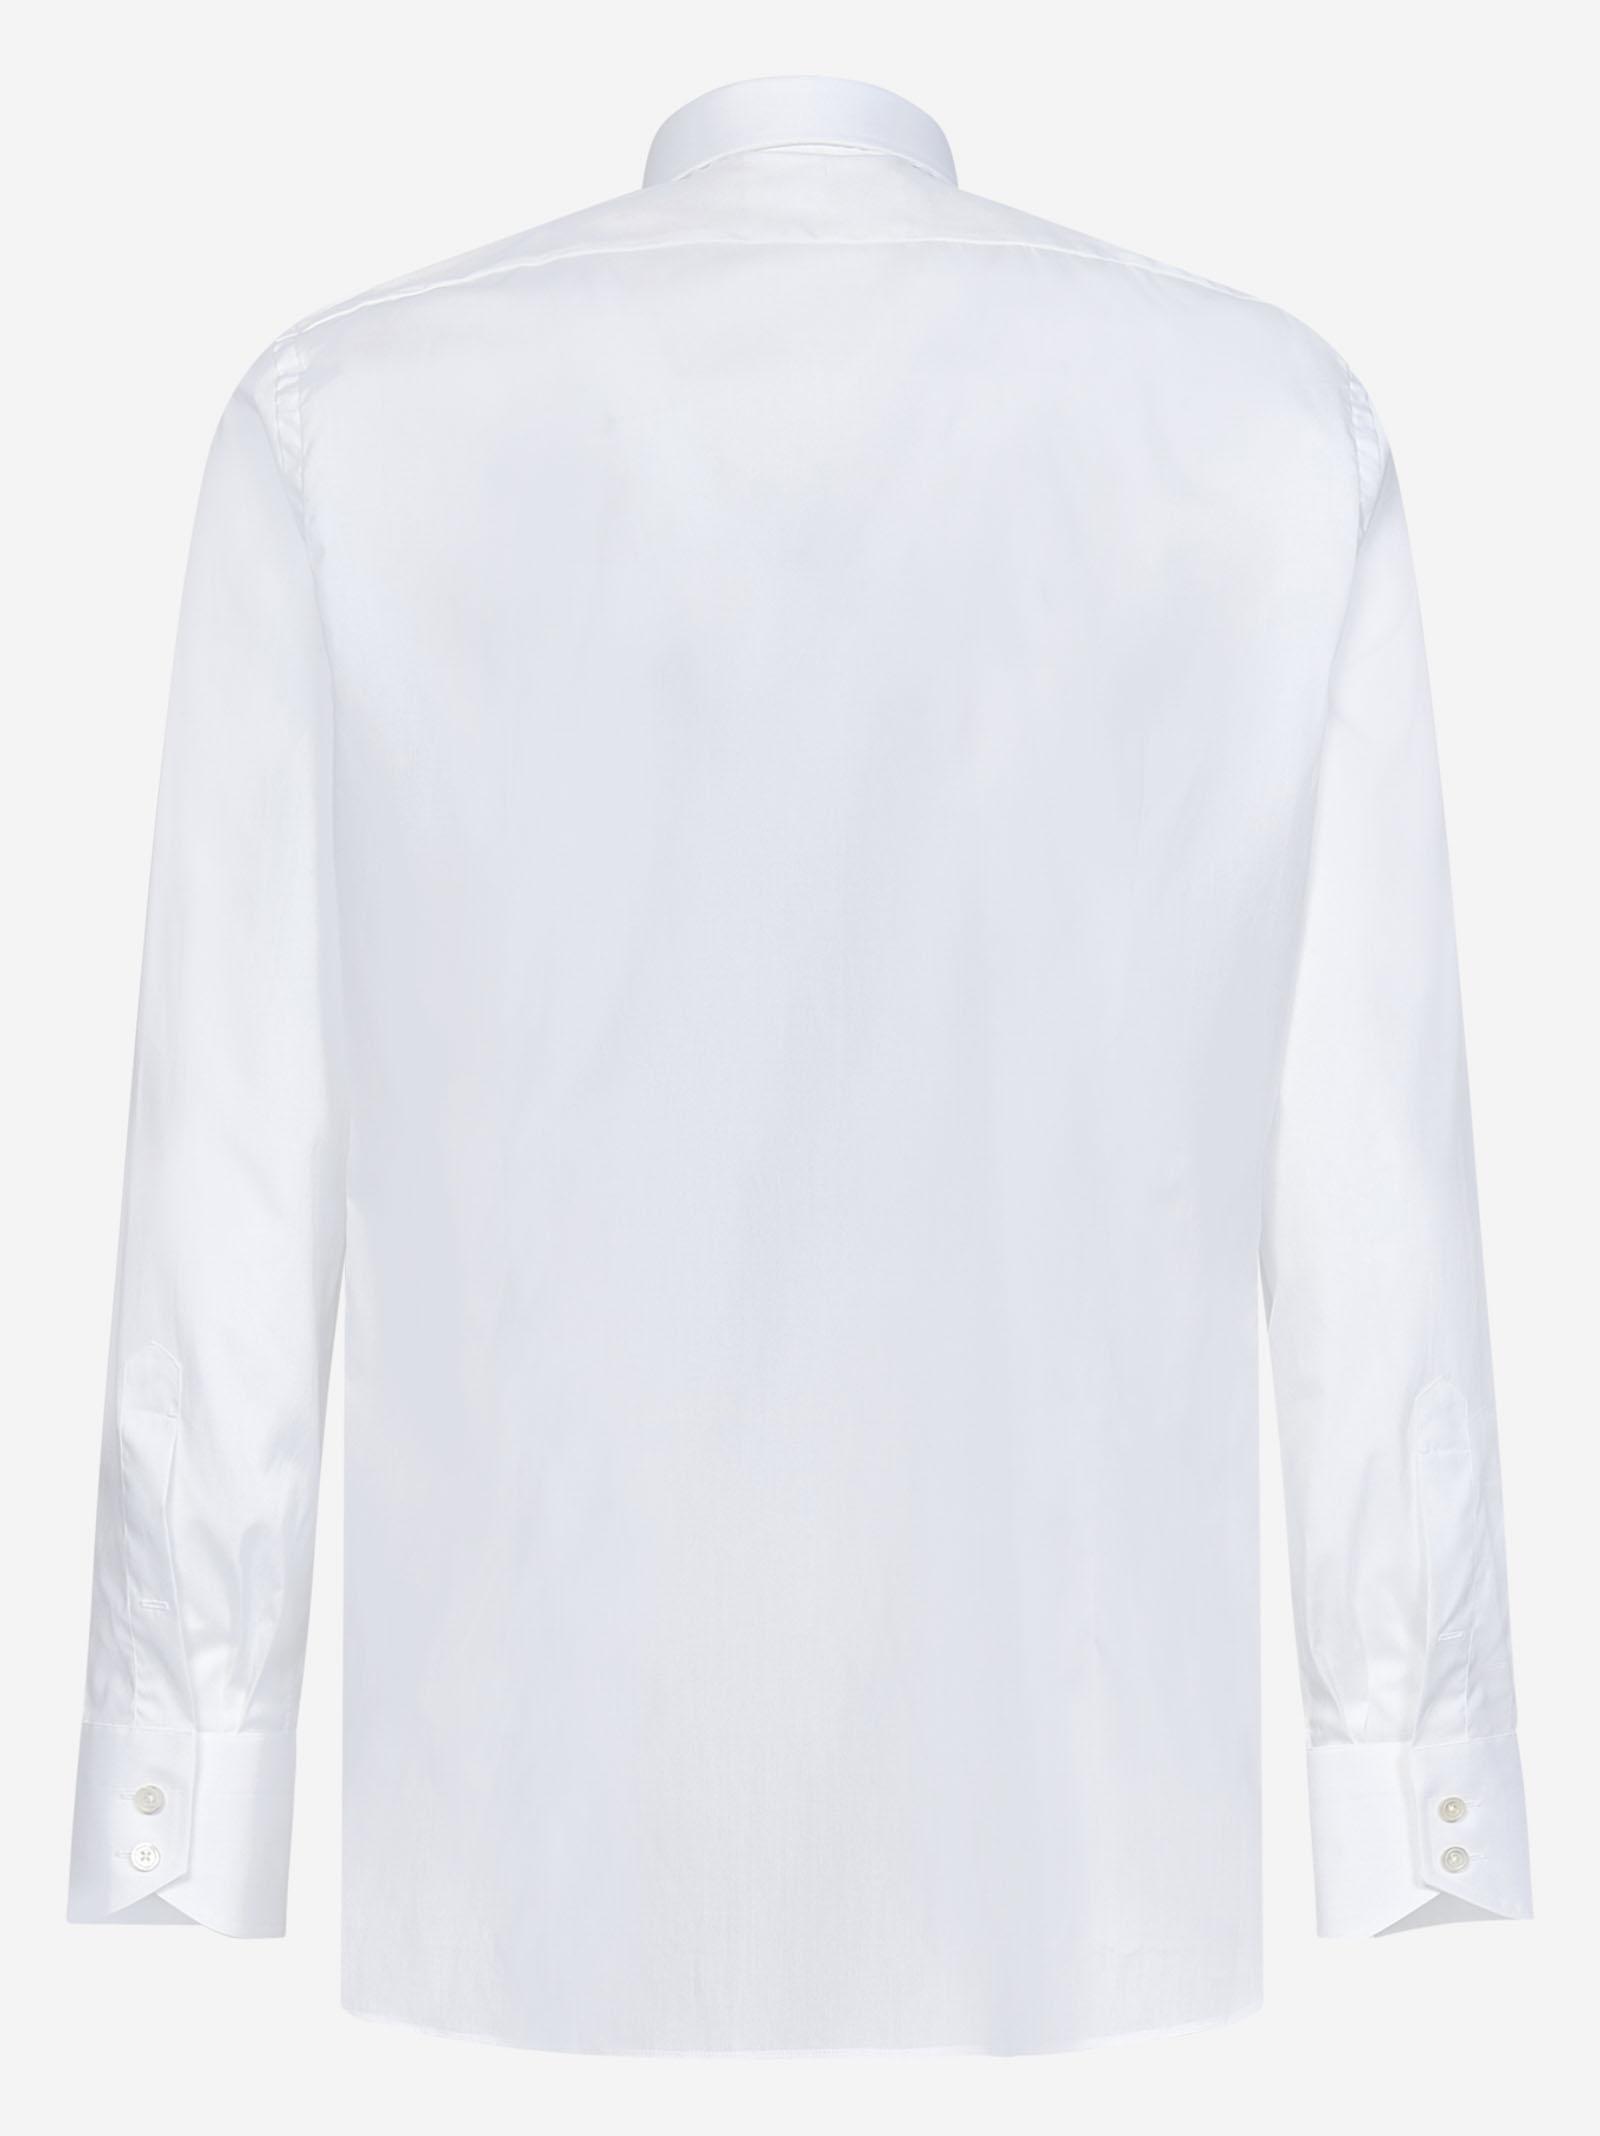 Tom Ford Shirt in White for Men | Lyst